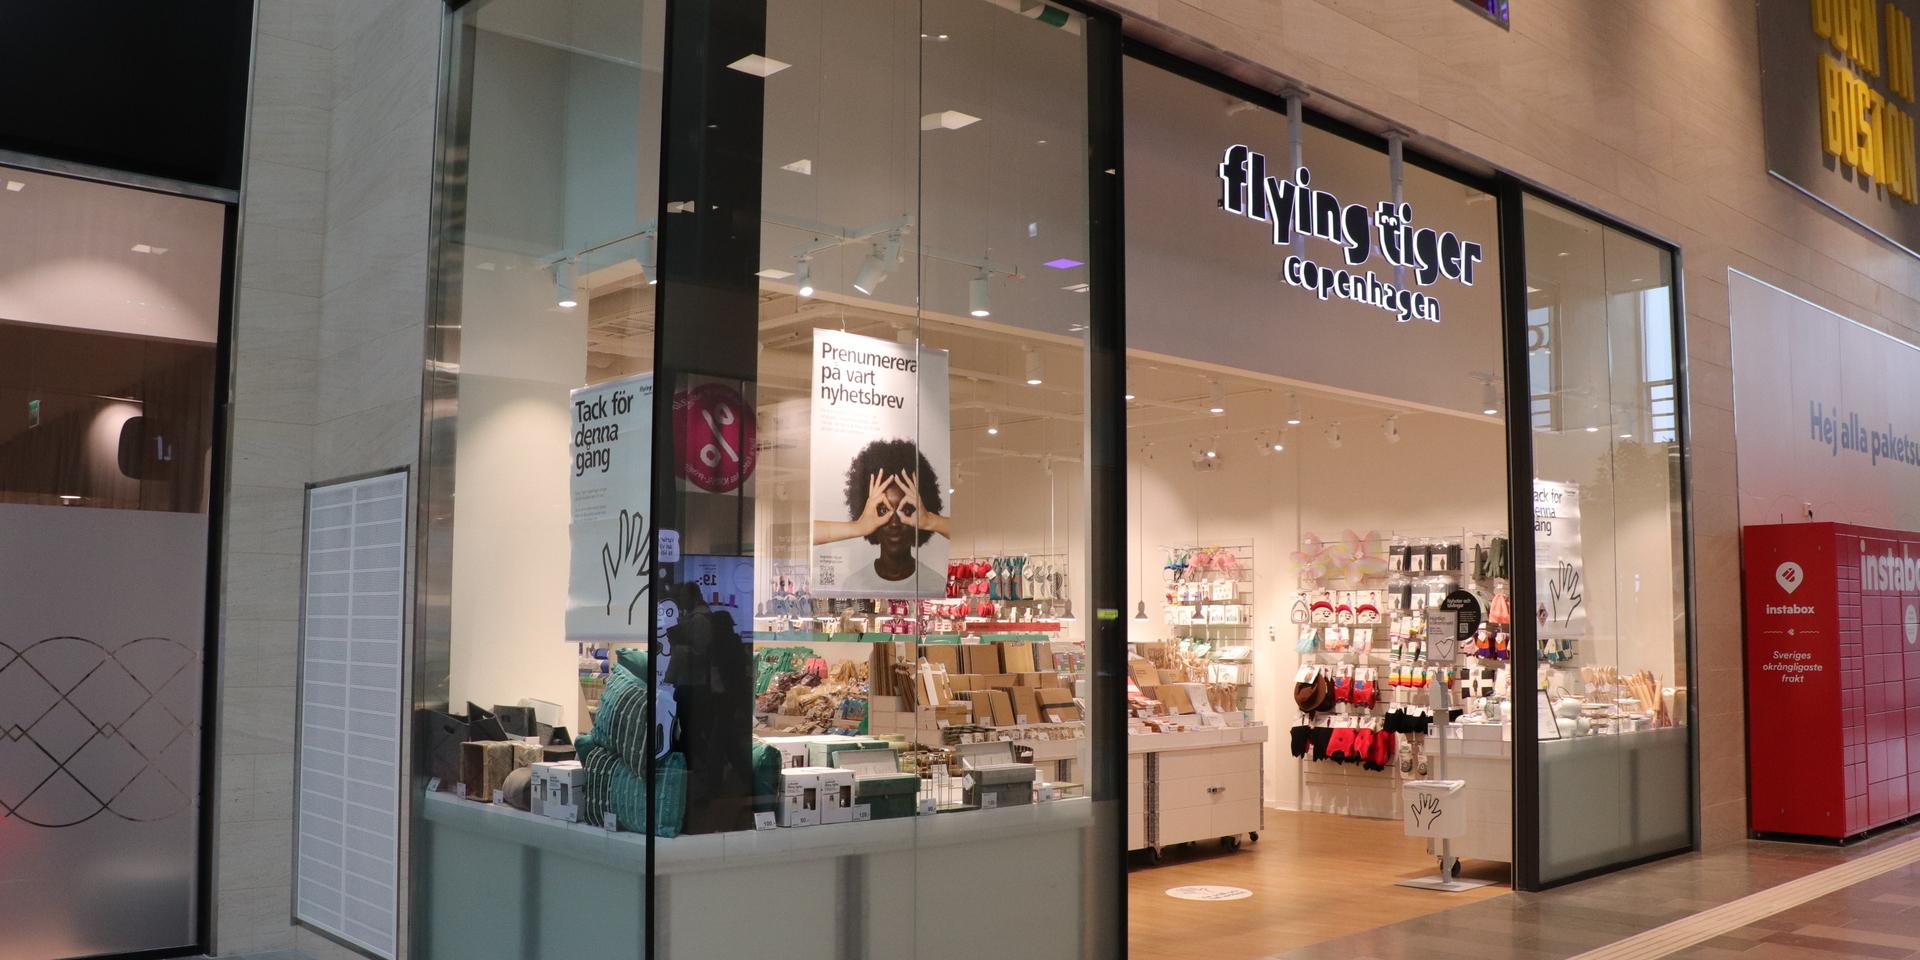 Sedan Kongahälla center öppnade år 2019 har flera butiker kommit och gått. 